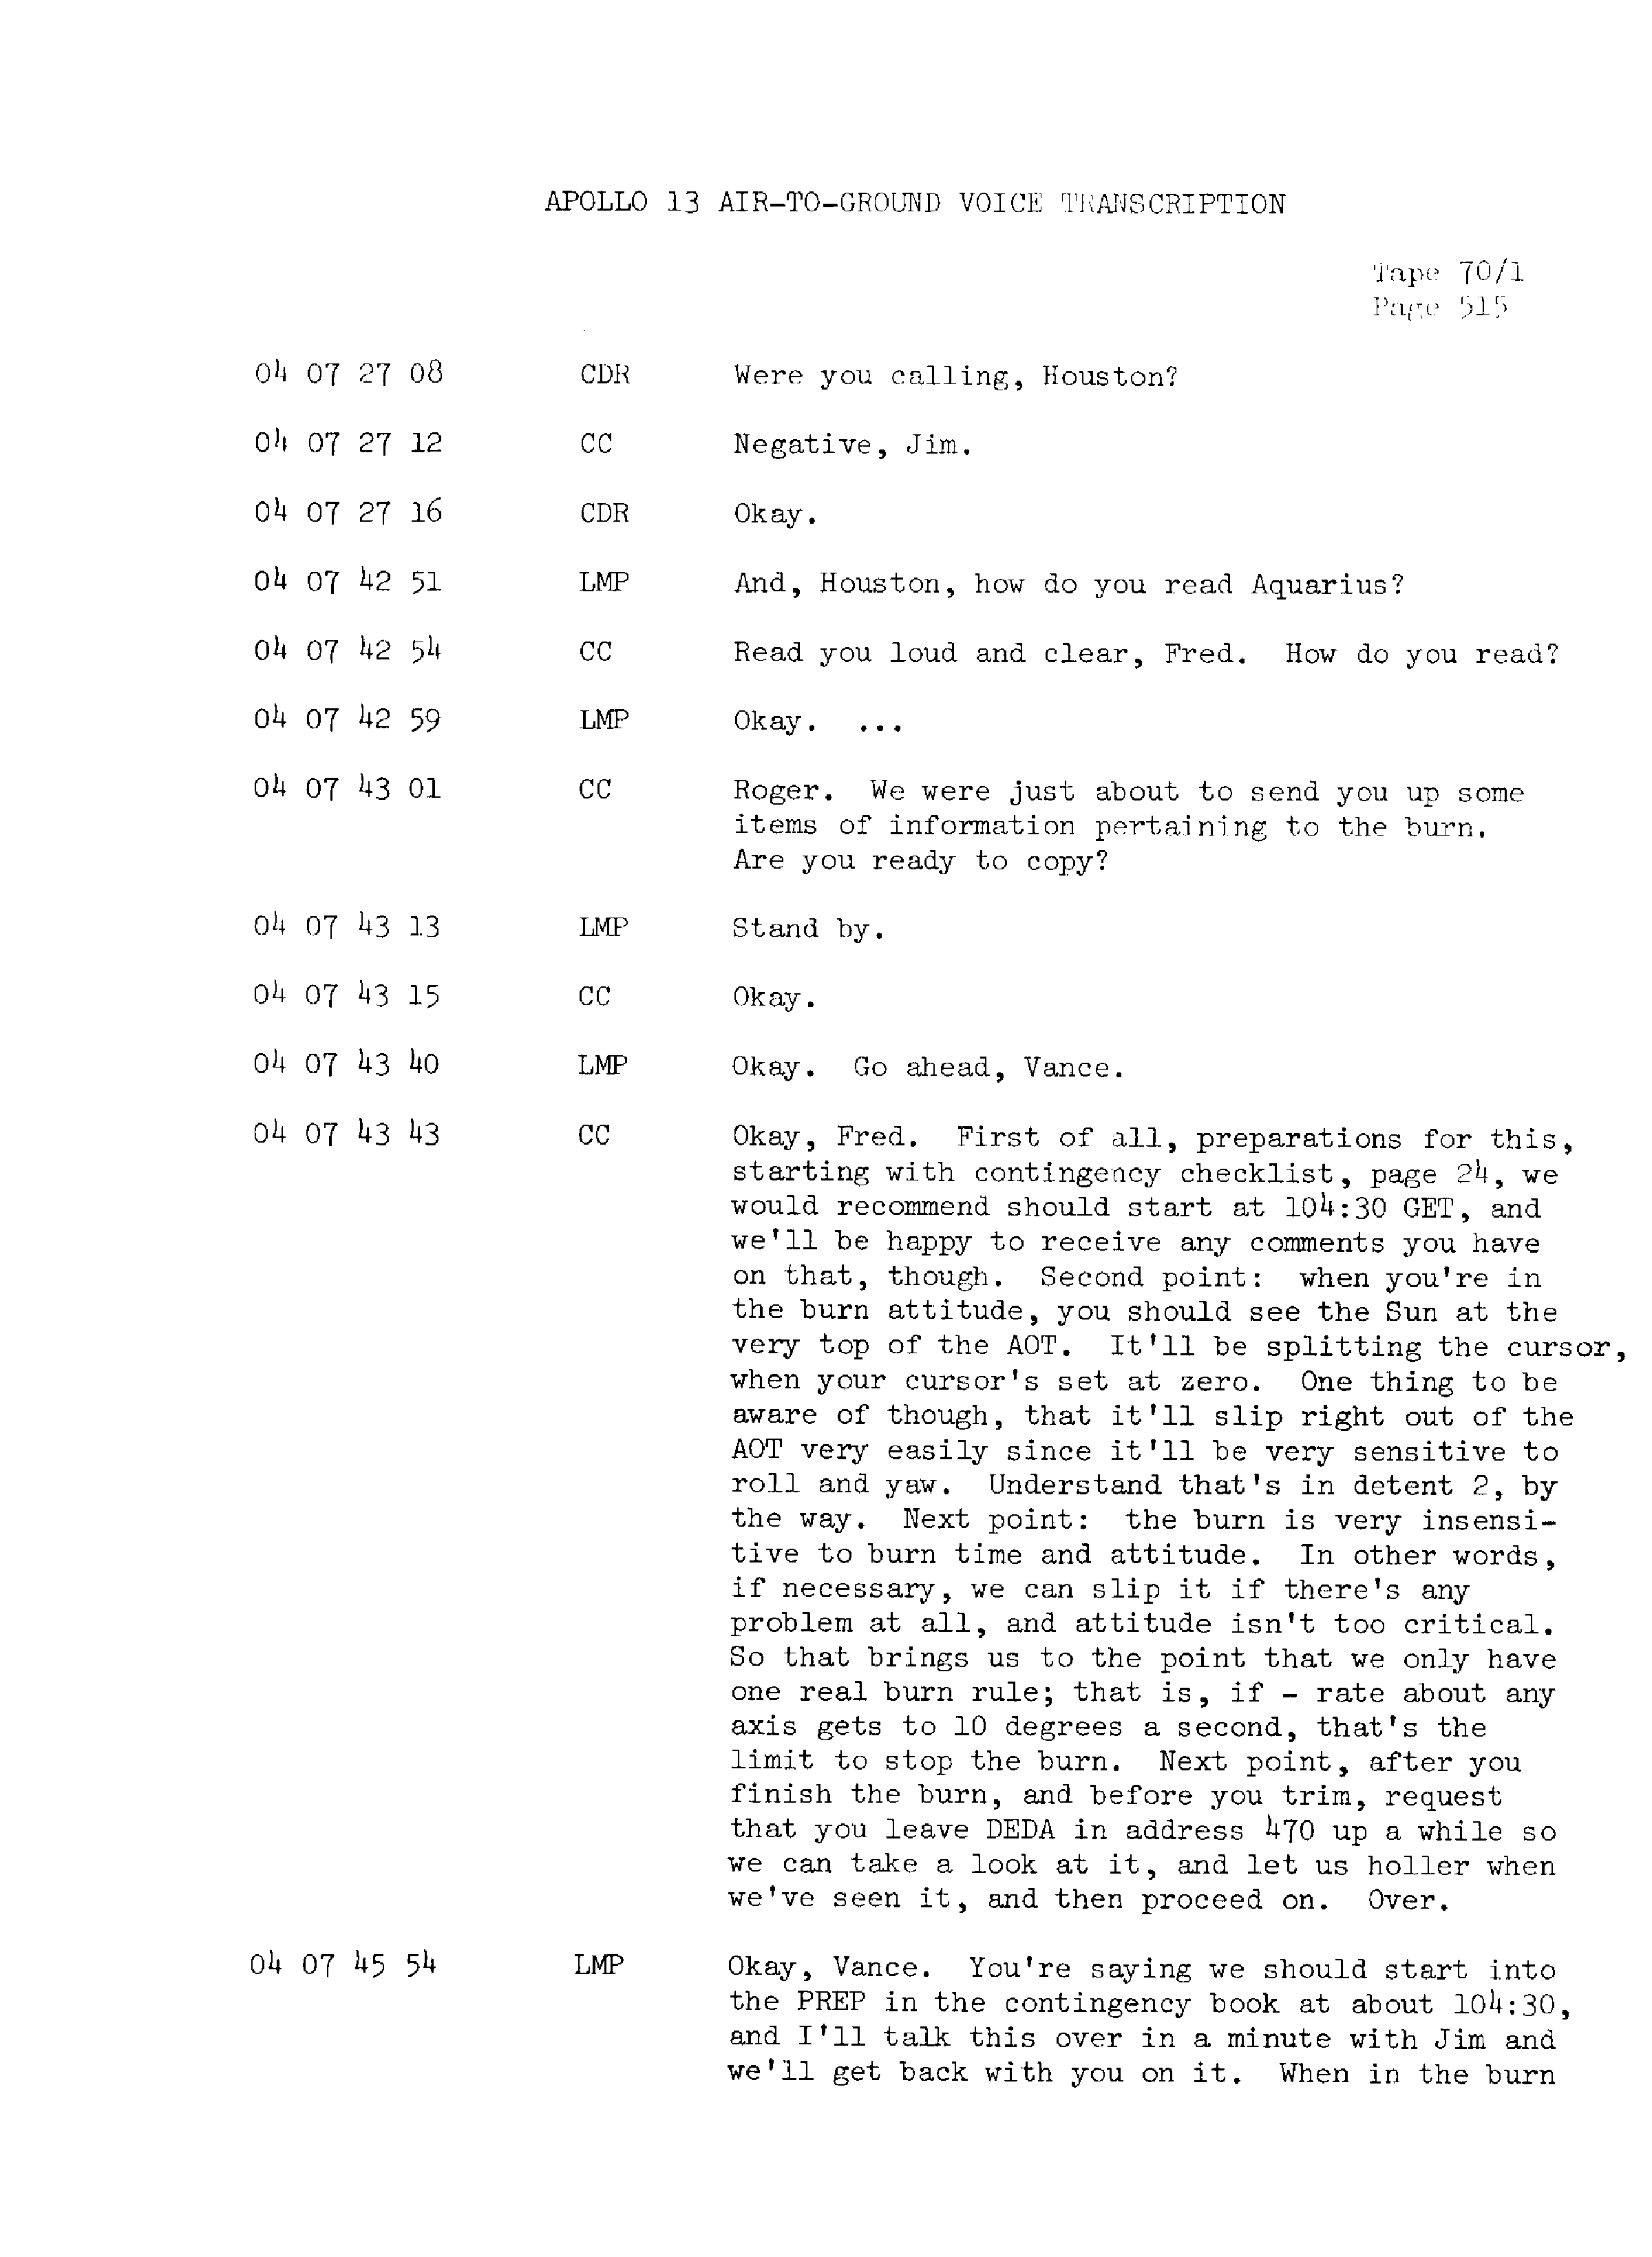 Page 522 of Apollo 13’s original transcript